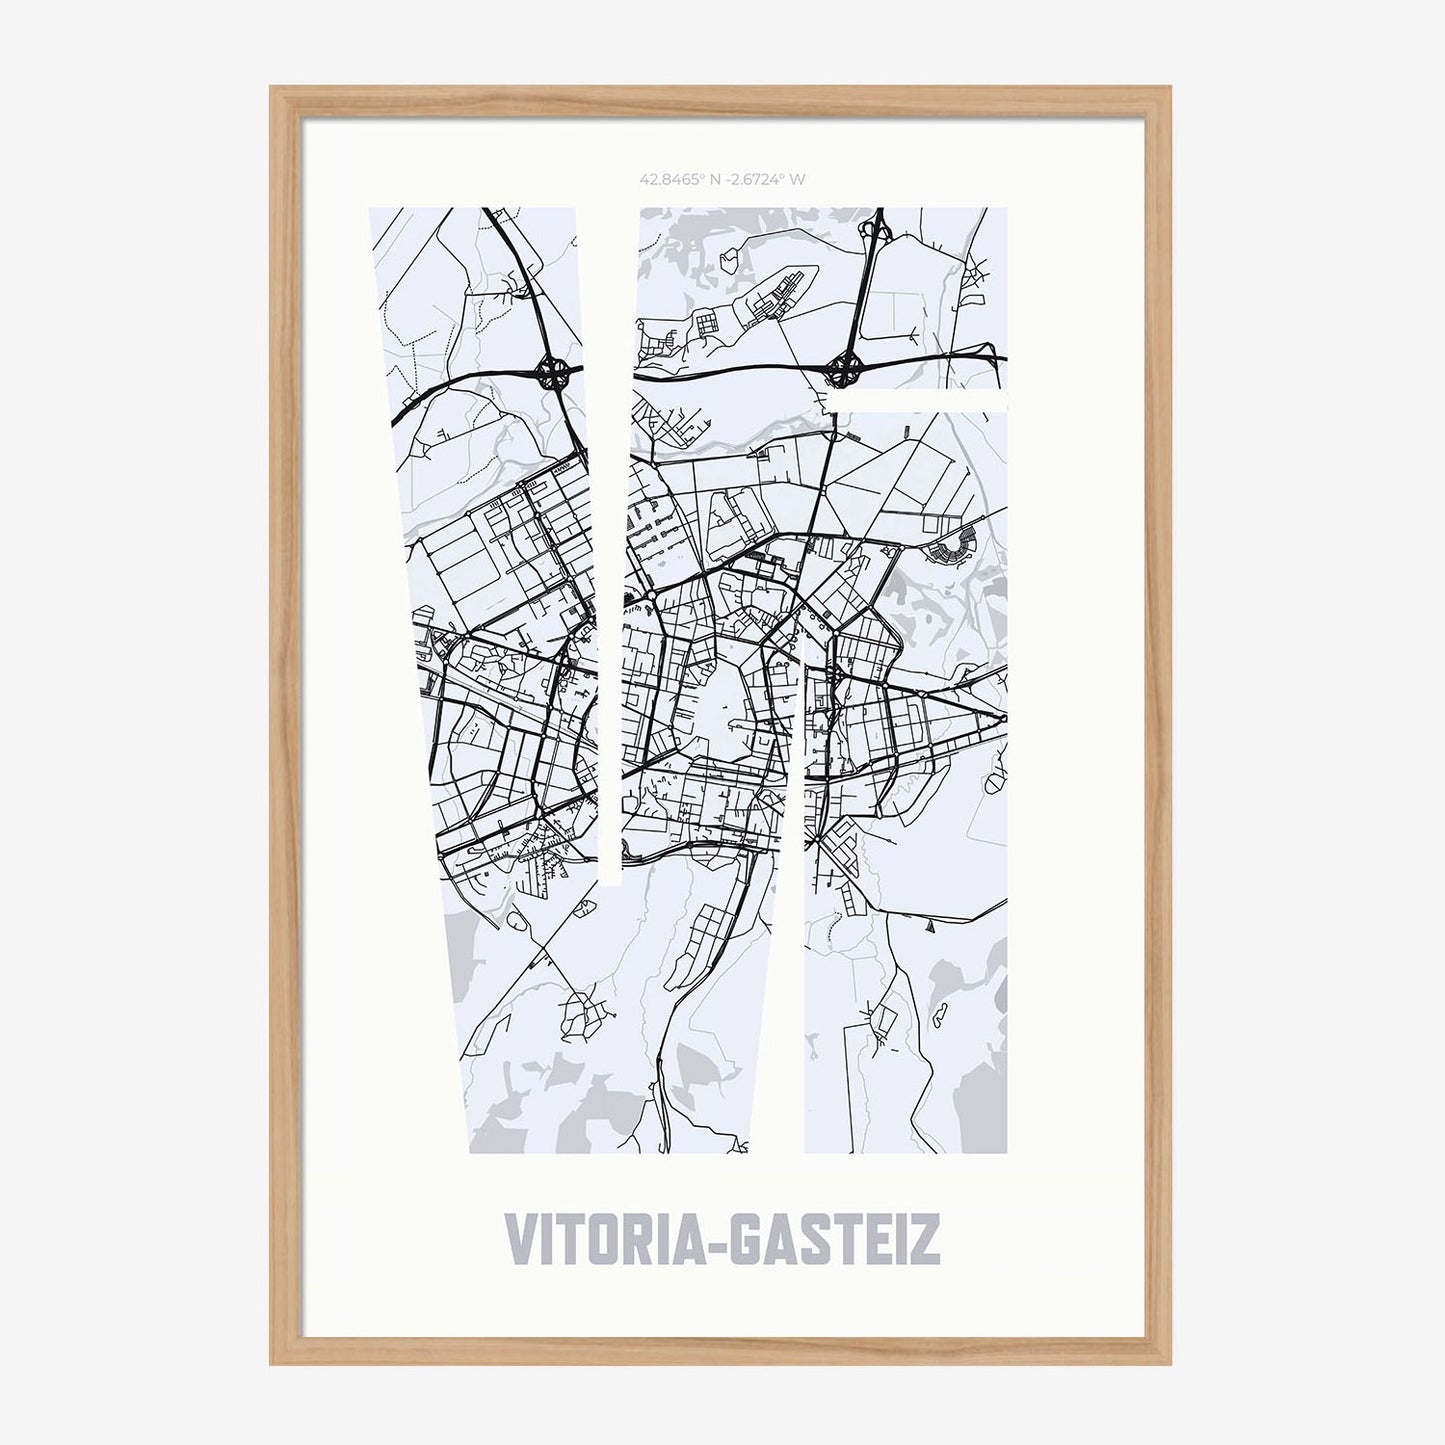 VI Vitoria-Gasteiz Poster